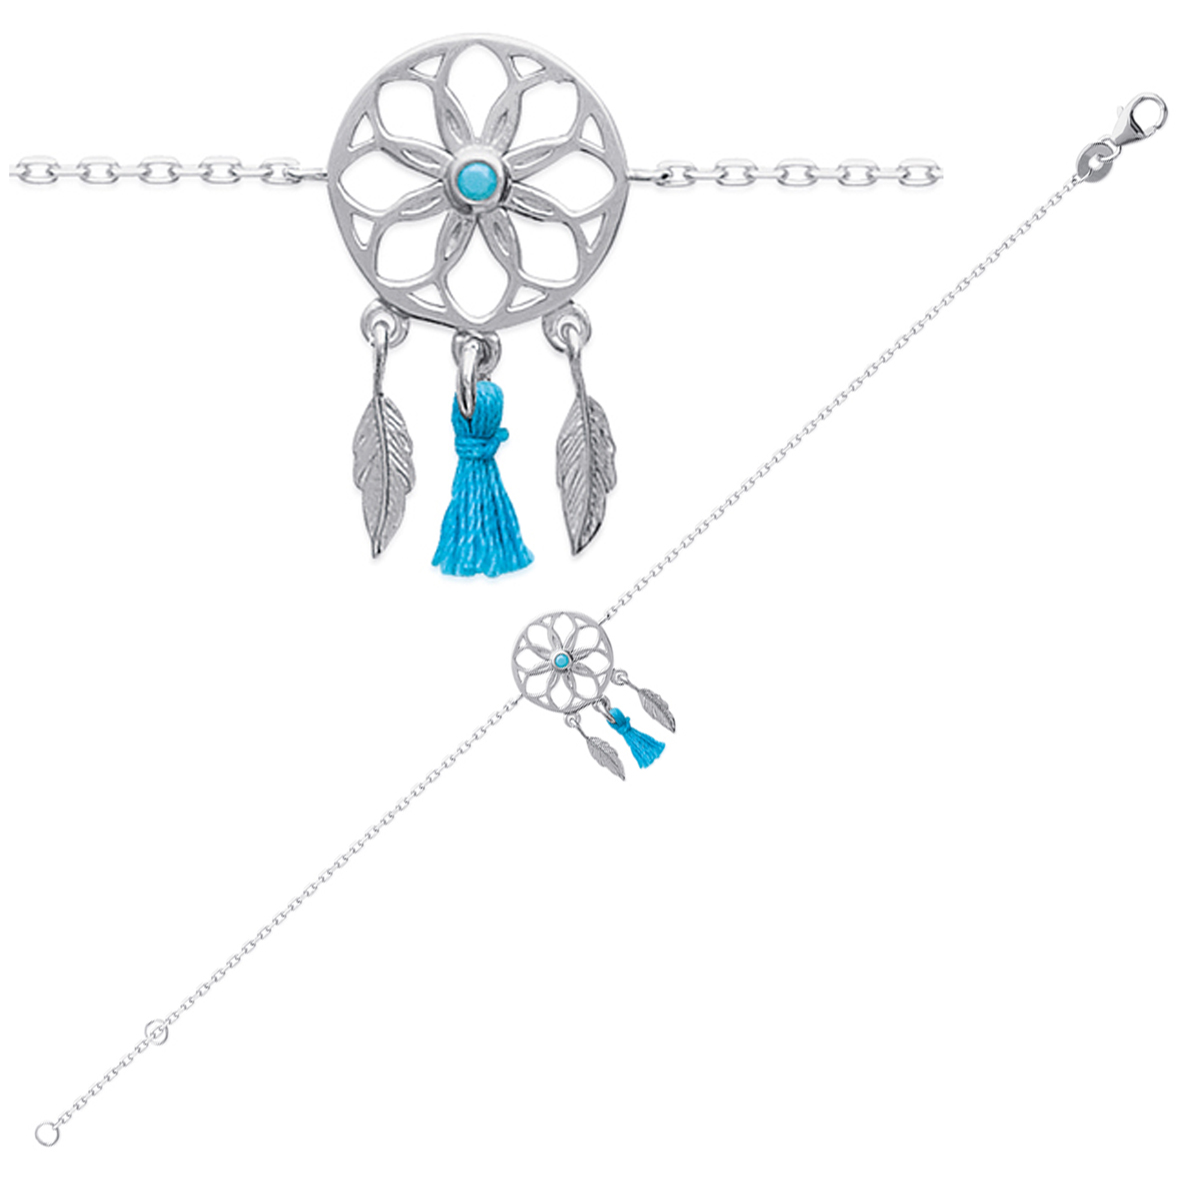 Bracelet Argent \'Navajos\' turquoise argenté (rhodié) dreamcatcher - 20x11 mm - [P1961]